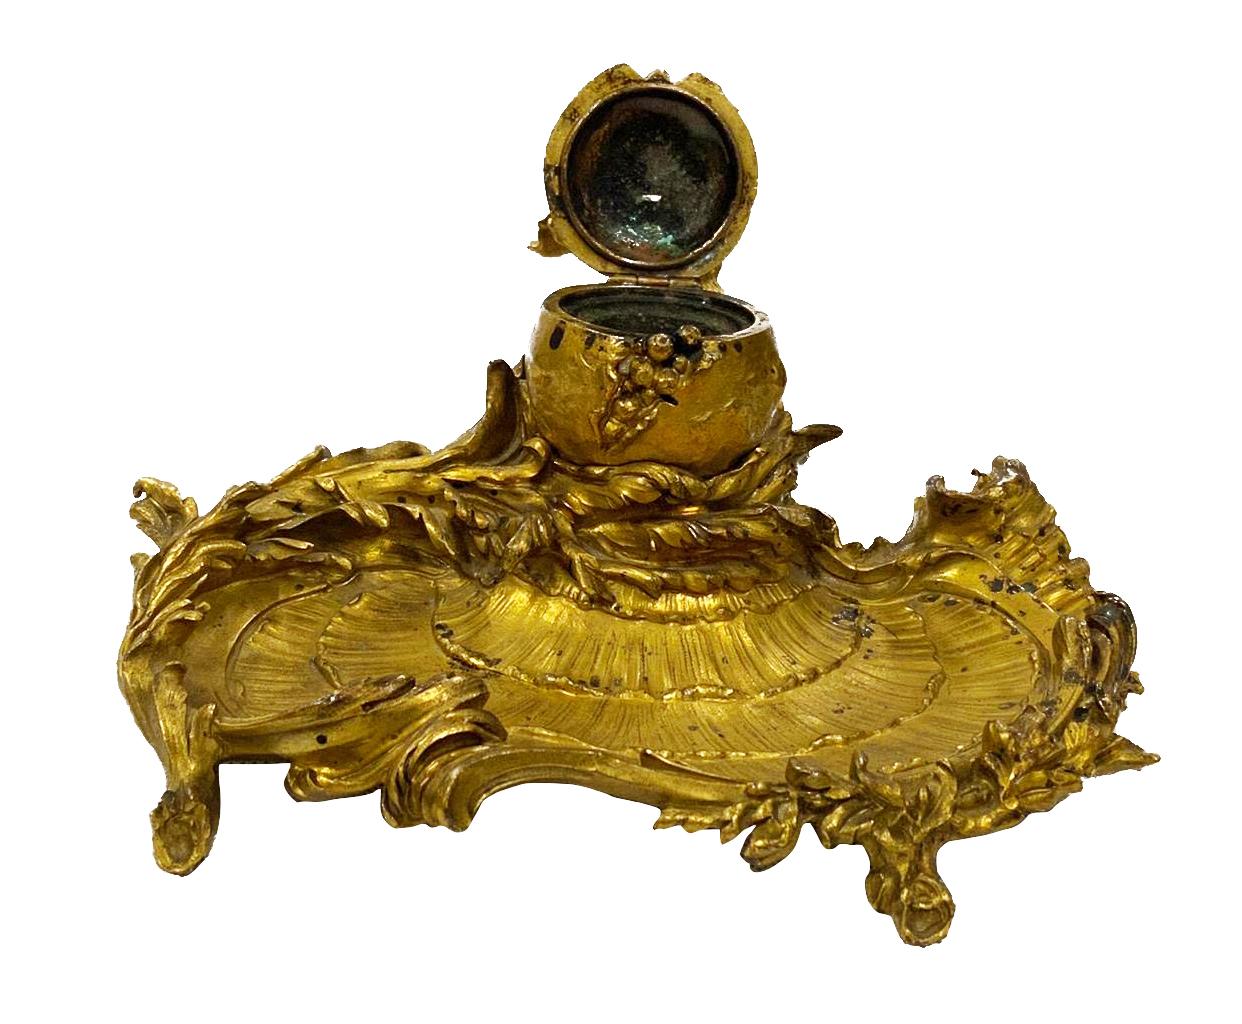 Encrier de bureau en bronze doré de la fin du XIXe siècle, estampillé Sormani, Paris. Elle présente un magnifique décor de feuillage stylisé et de coquillages, ainsi qu'un couvercle central à charnière. Mesures : 22cm (8.5